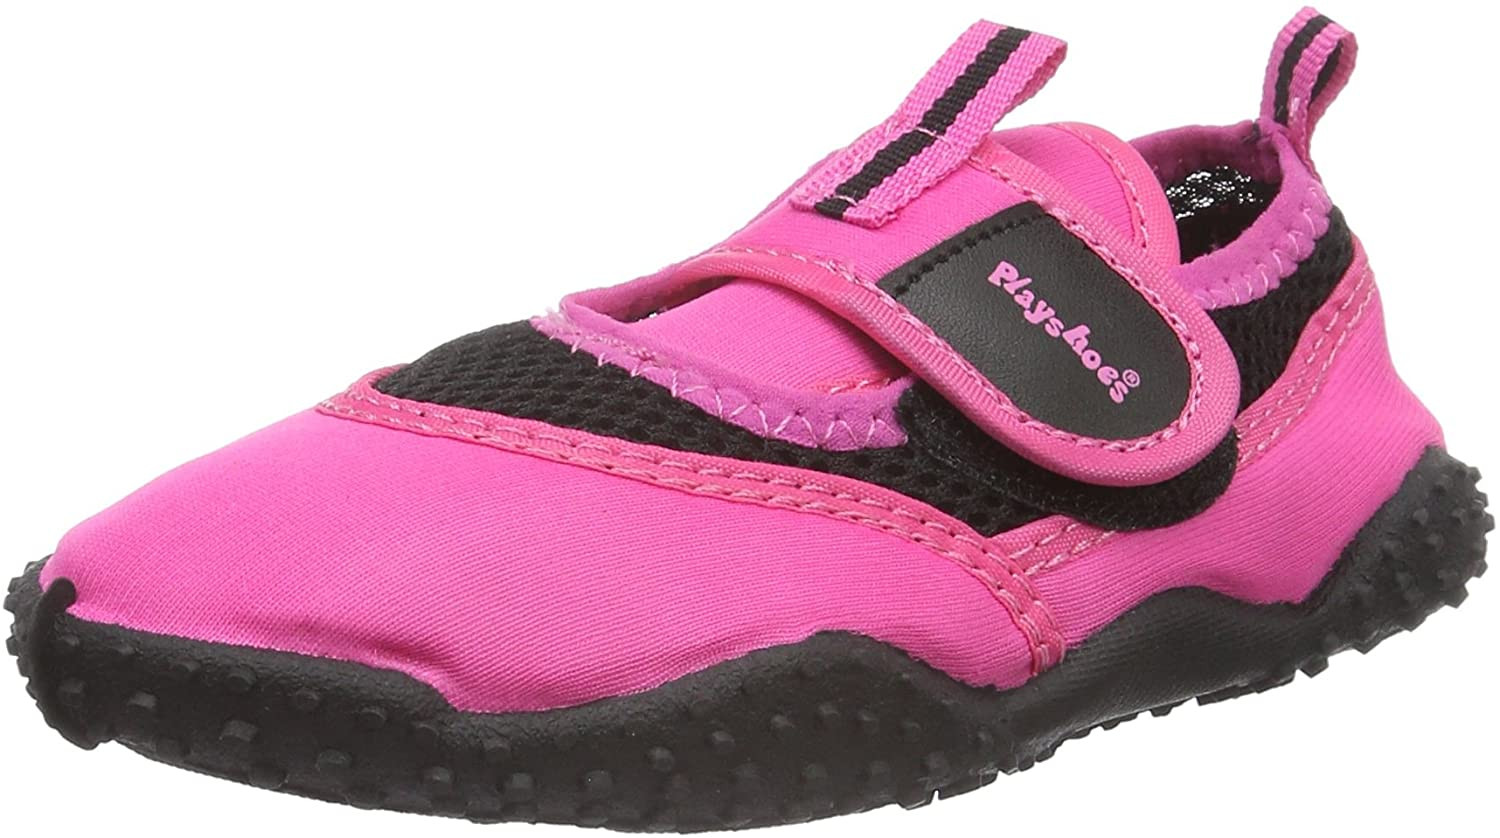 Playshoes Zapatillas de Playa con Protección UV Deportivos Zapatos de Agua Unisex niños 